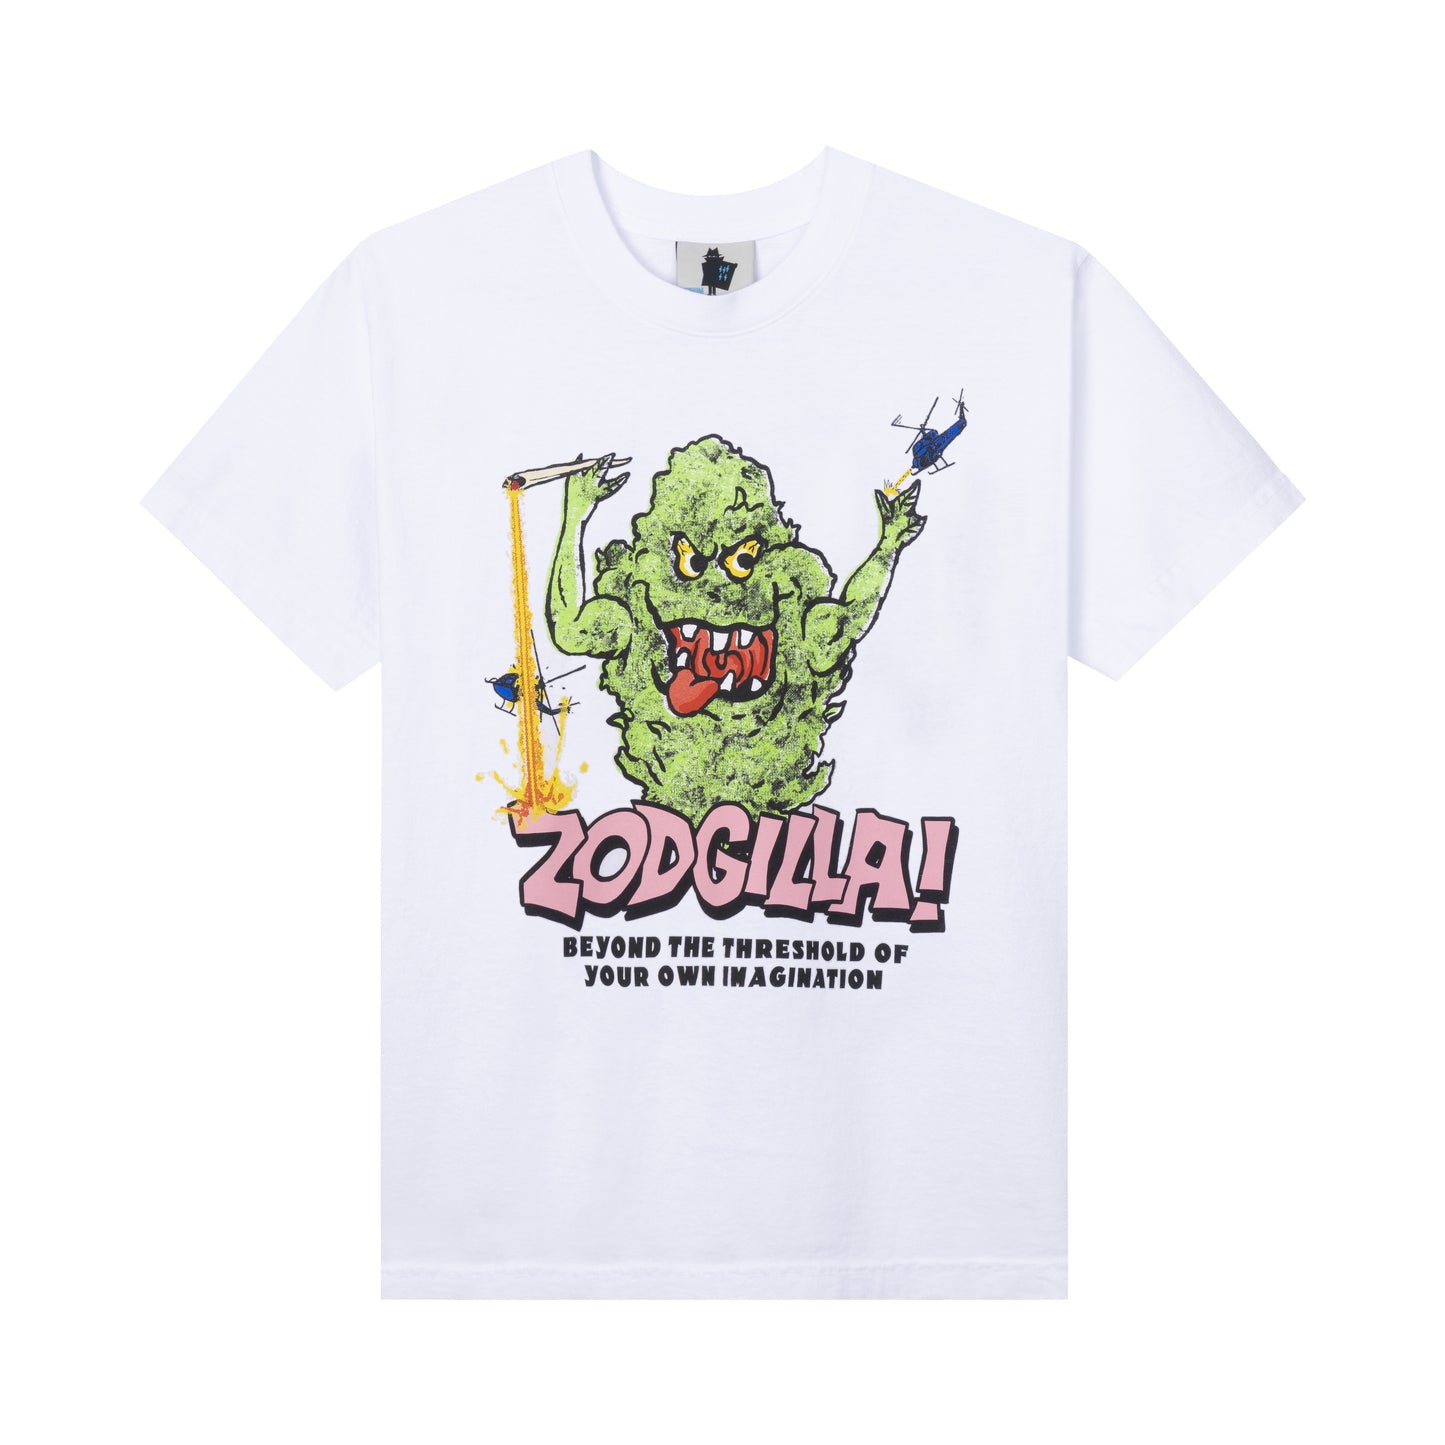 Real Bad Man Zodgilla! T-Shirt